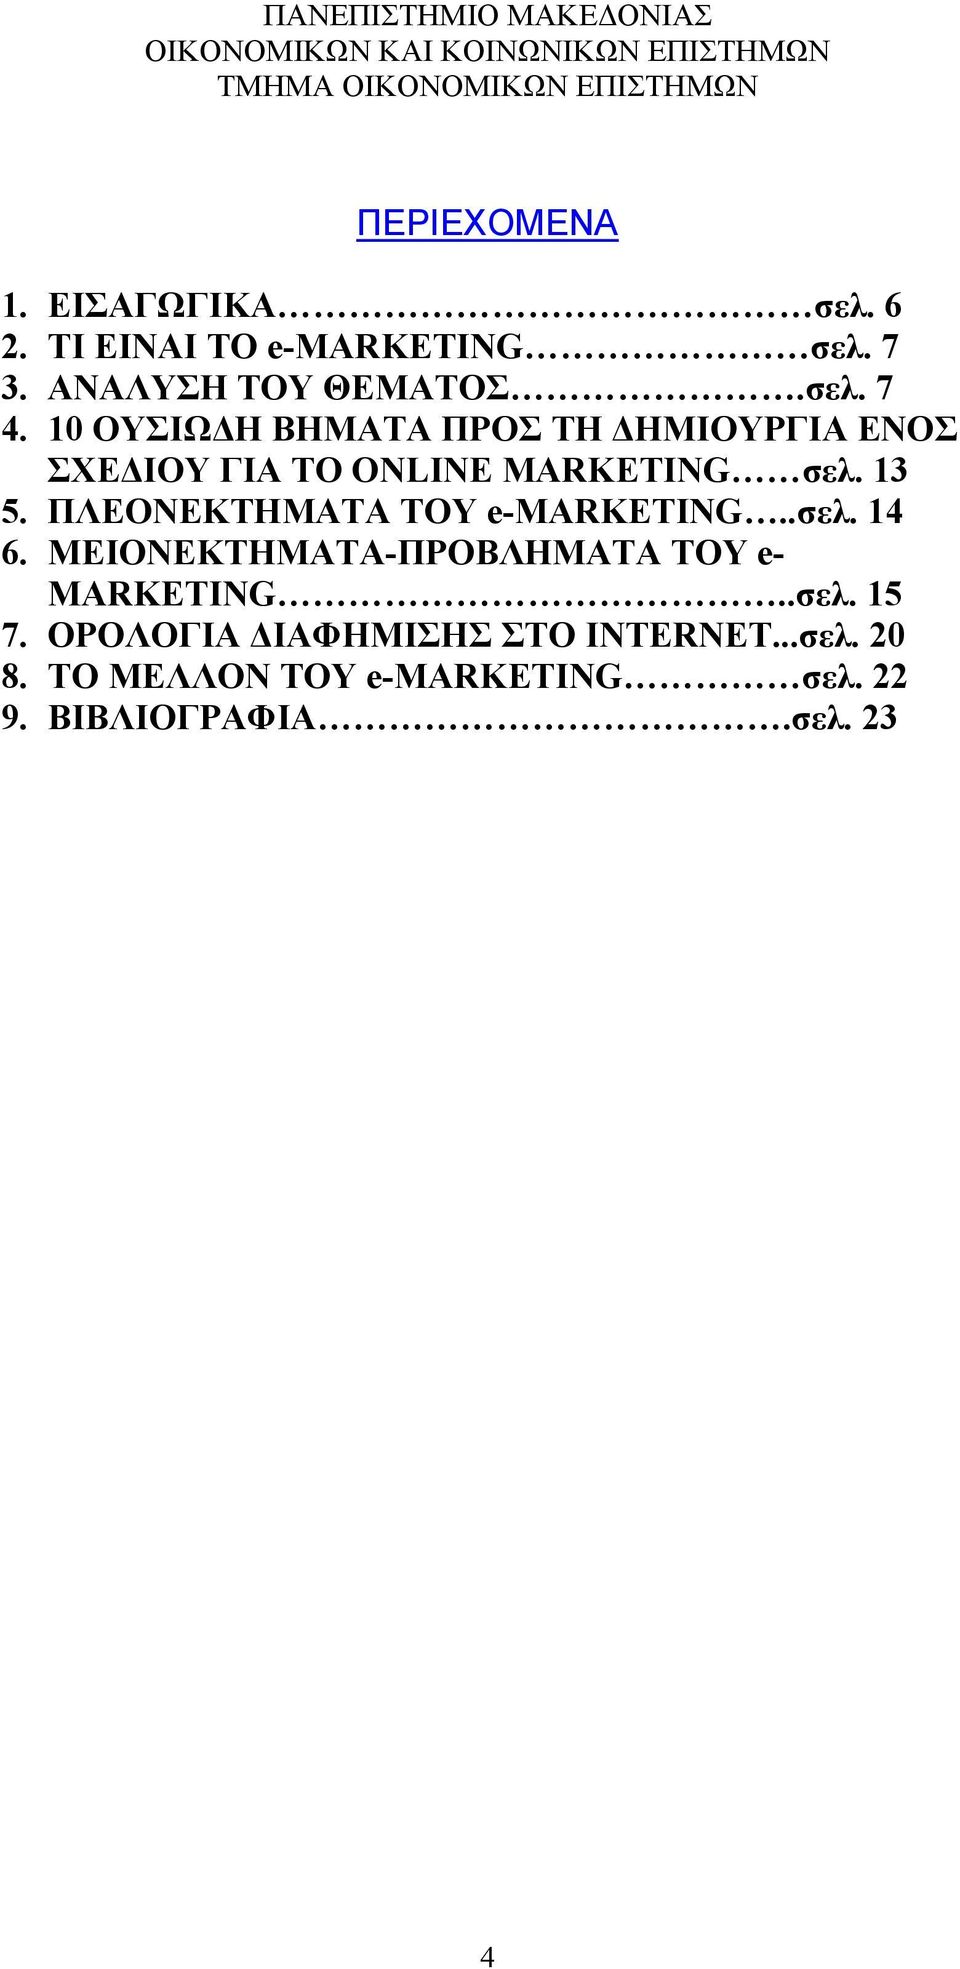 ΠΛΕΟΝΕΚΤΗΜΑΤΑ ΤΟΥ e-marketing..σελ. 14 6. ΜΕΙΟΝΕΚΤΗΜΑΤΑ-ΠΡΟΒΛΗΜΑΤΑ ΤΟΥ e- MARKETING..σελ. 15 7.